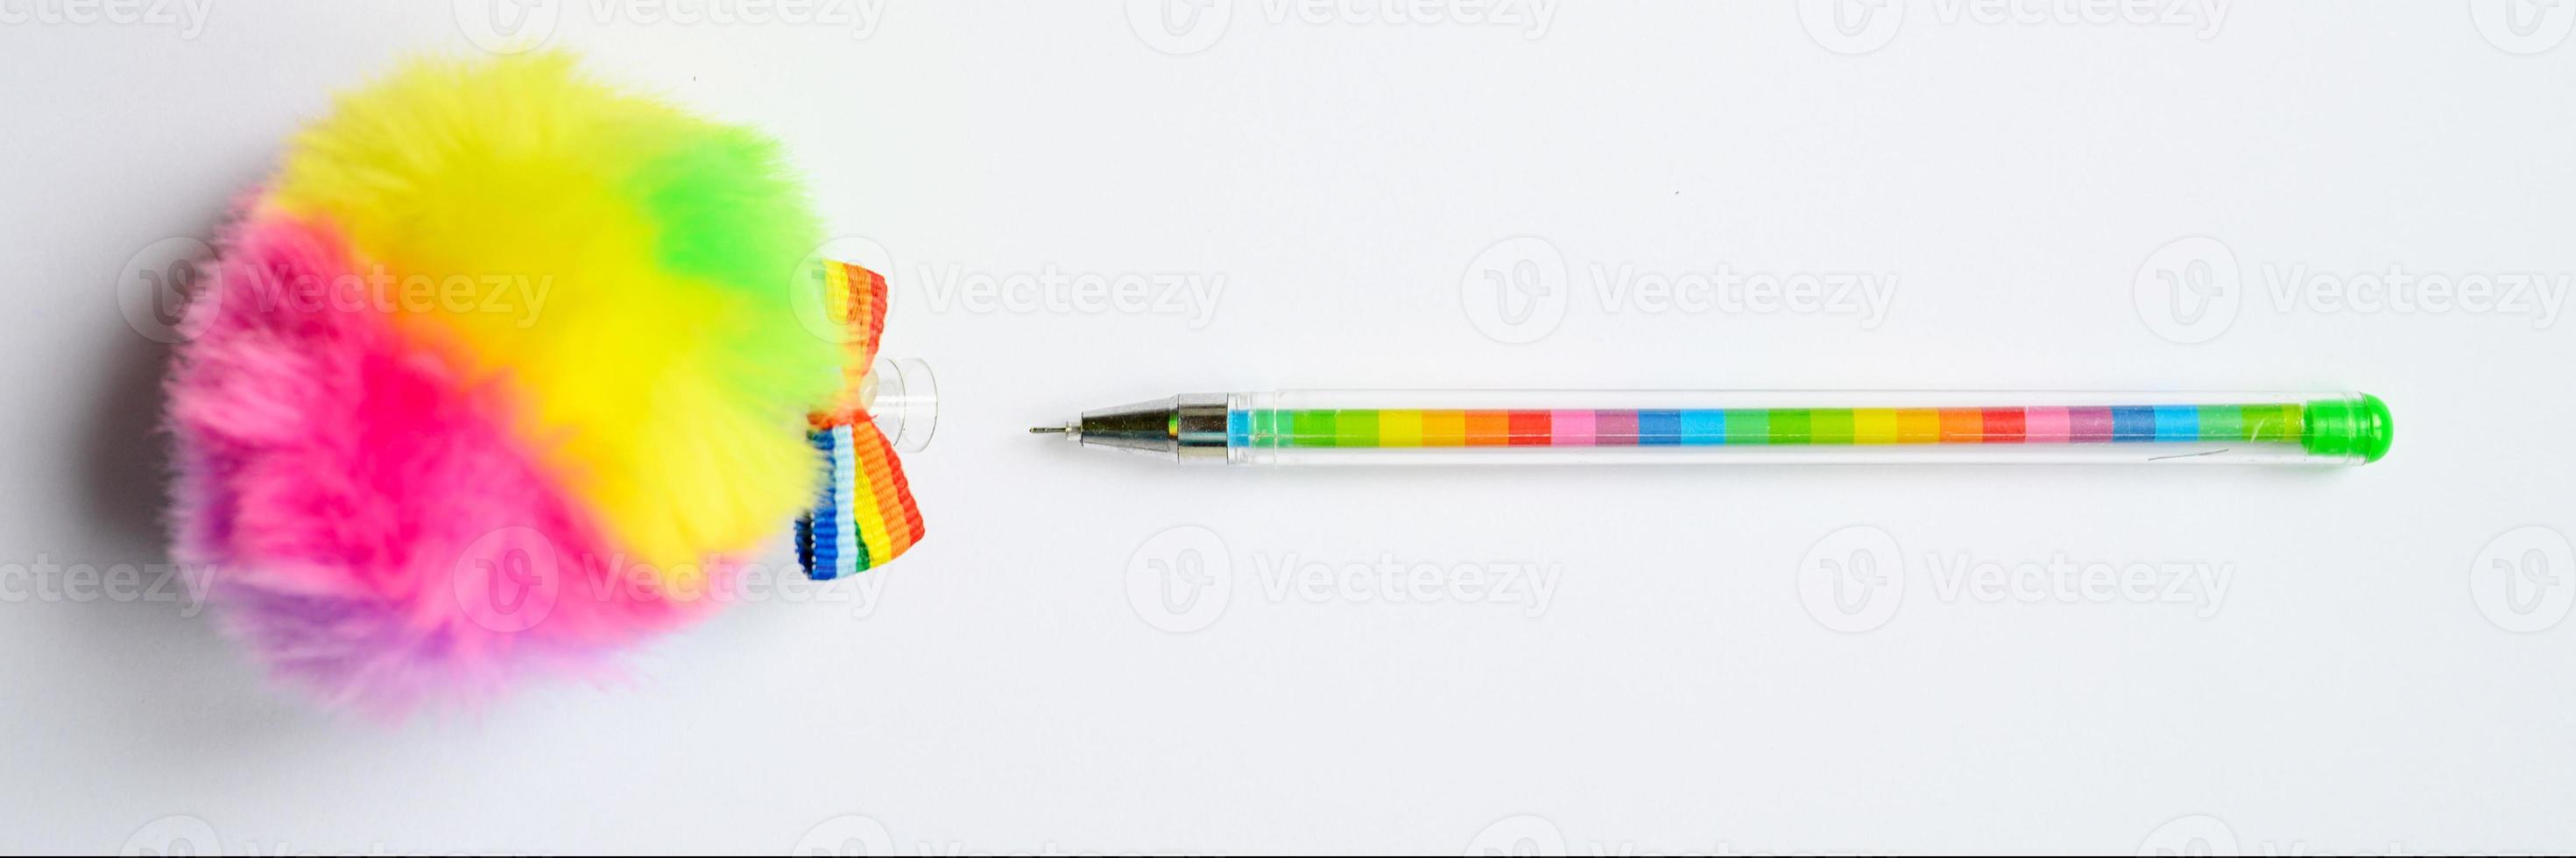 caneta multicolorida em fundo azul foto